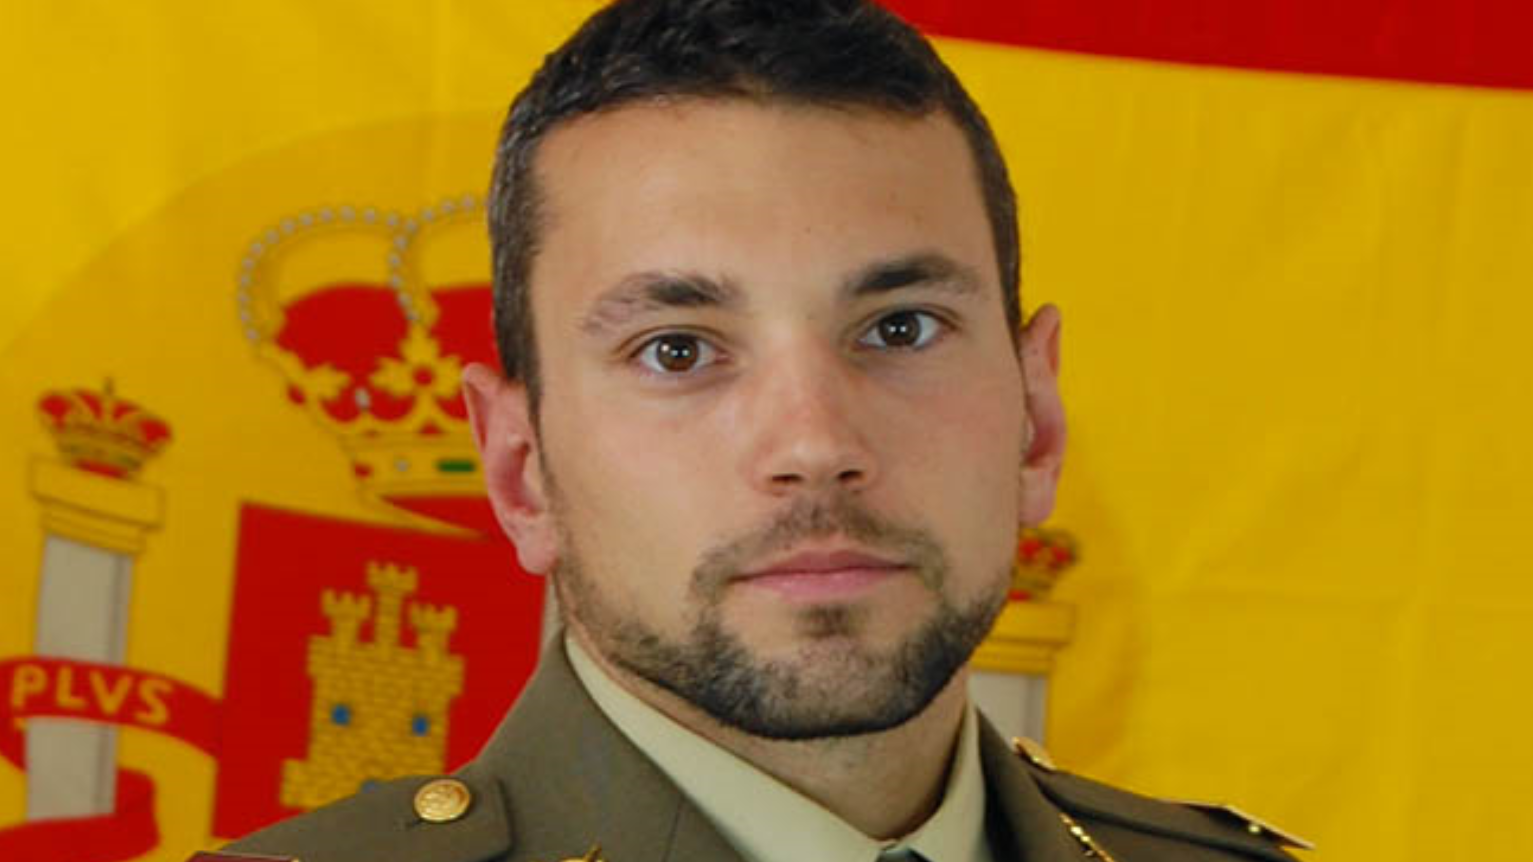 El sargento Rafael Gallart Martínez, del Ejército de Tierra, fallecido en el ejercicio